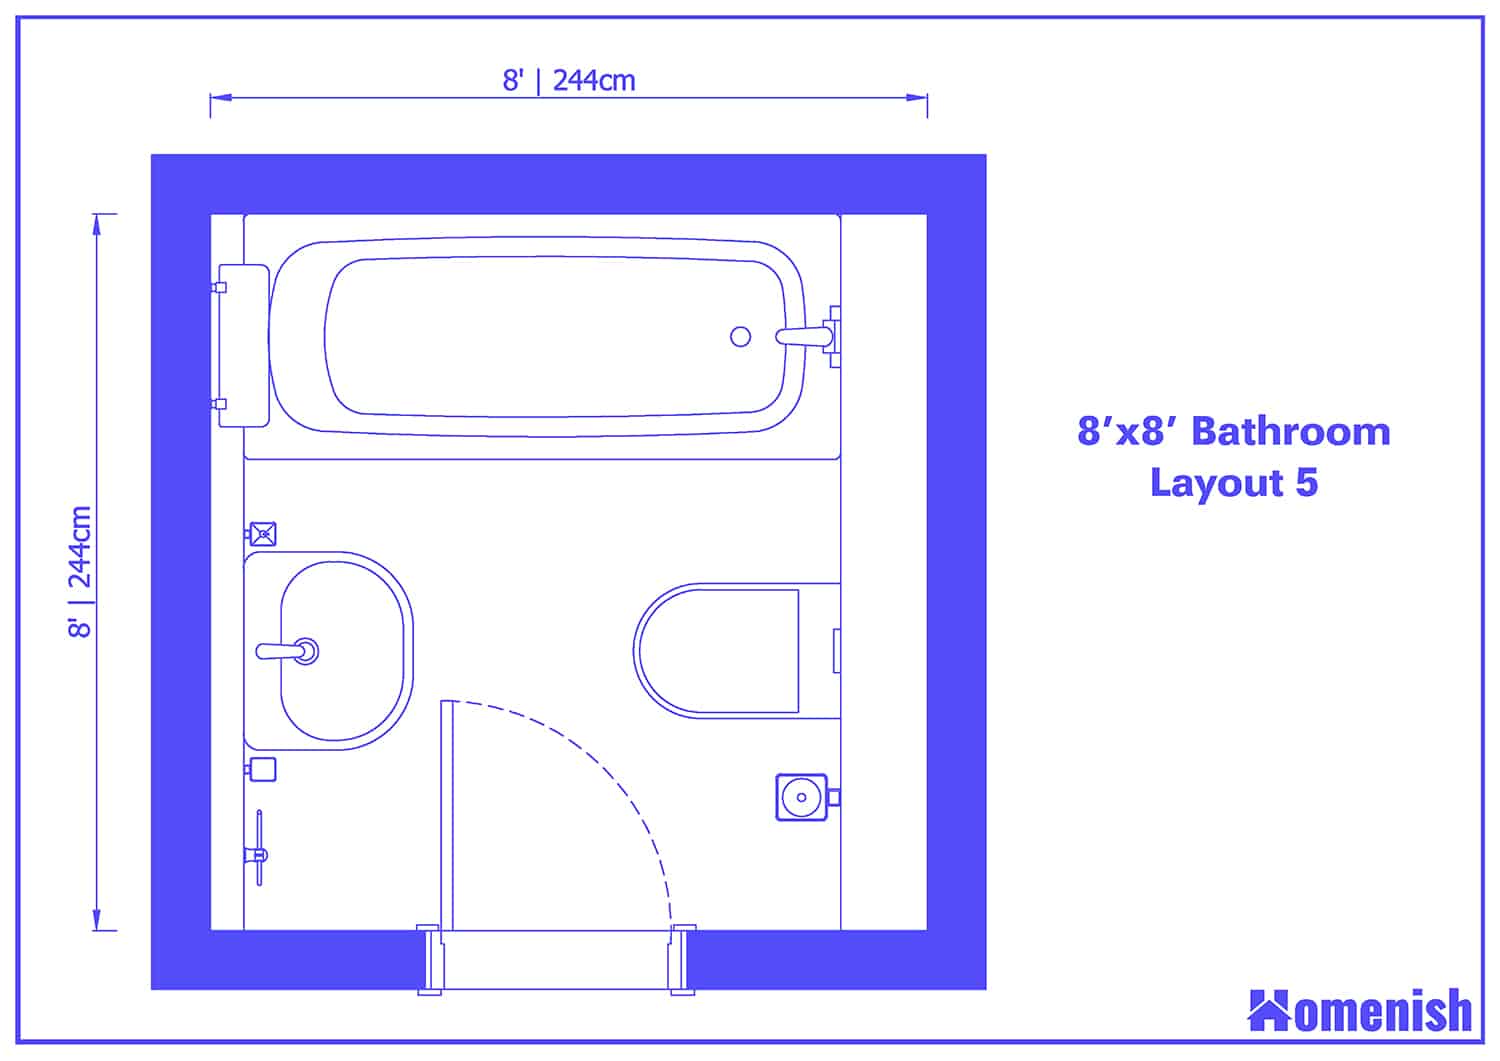 8' x 8' Bathroom Layout 5